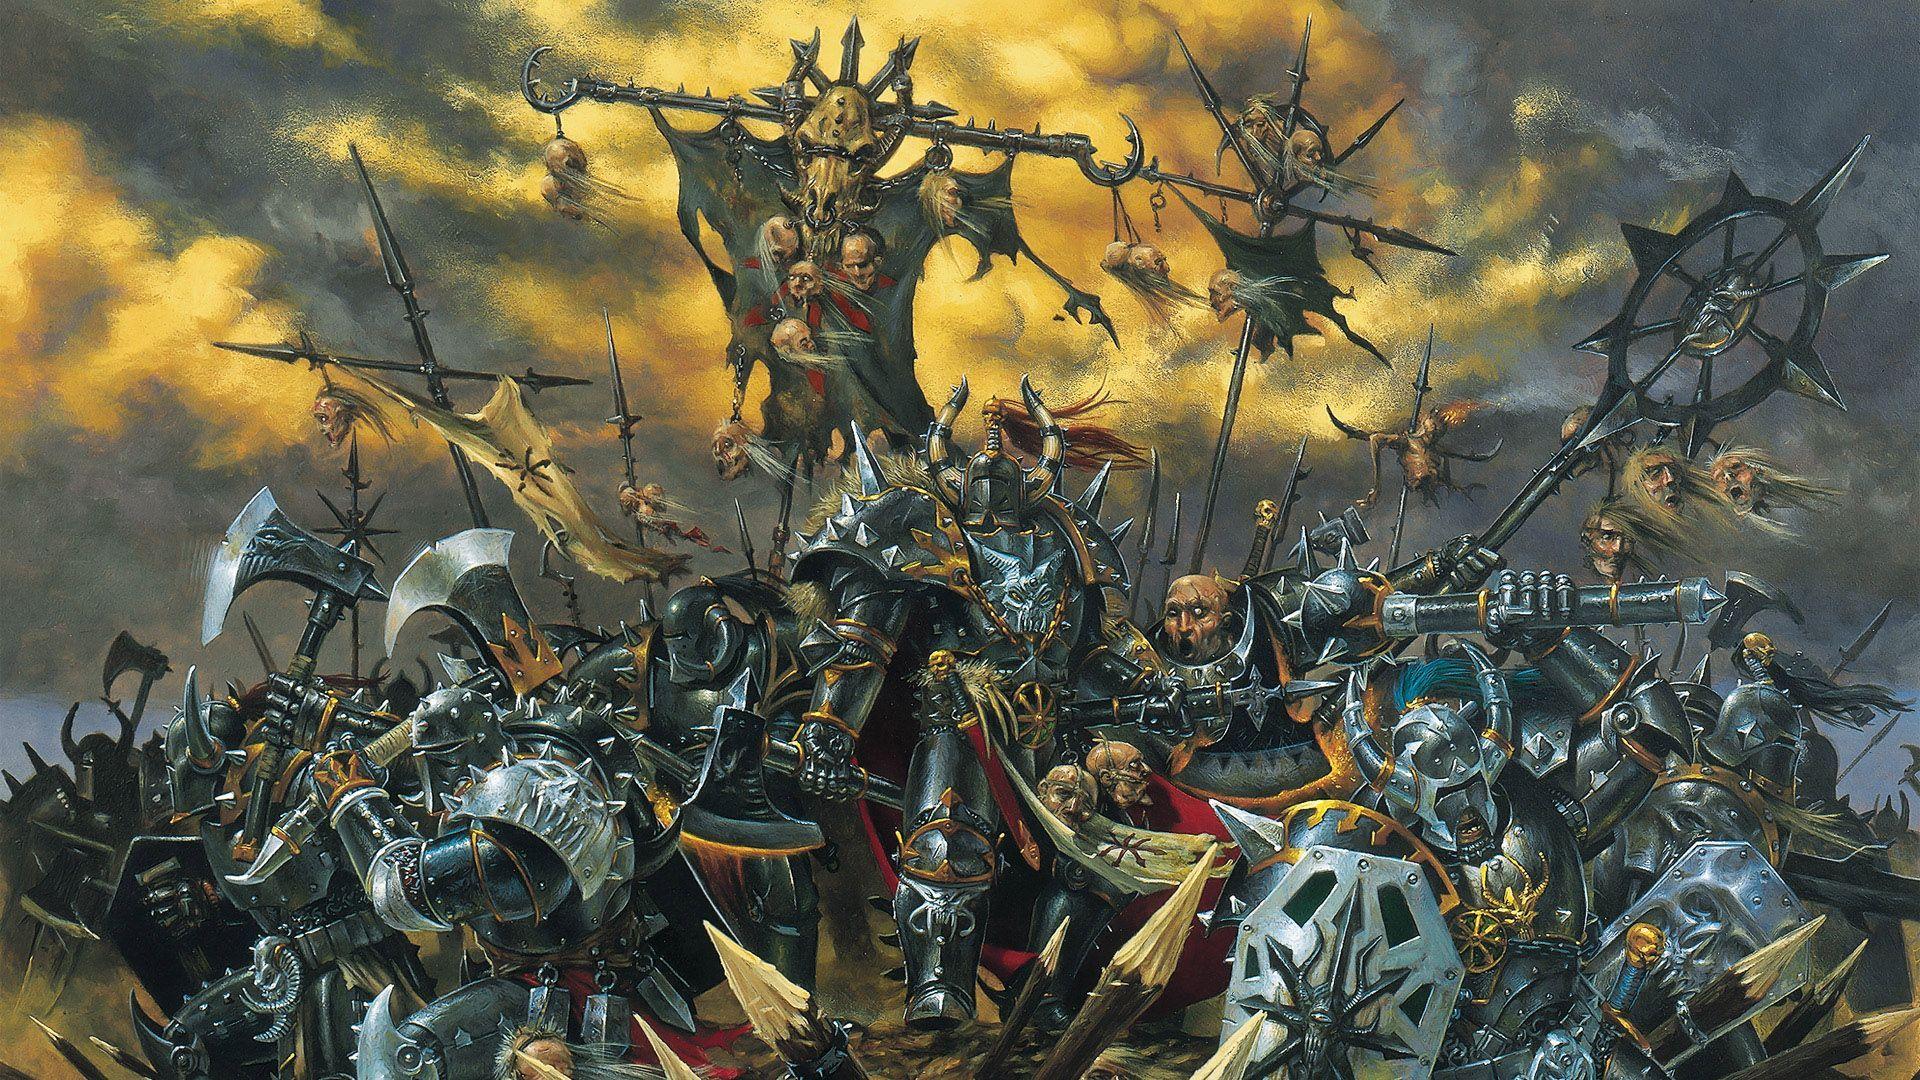 Warhammer Wallpaper. Warhammer art, Art